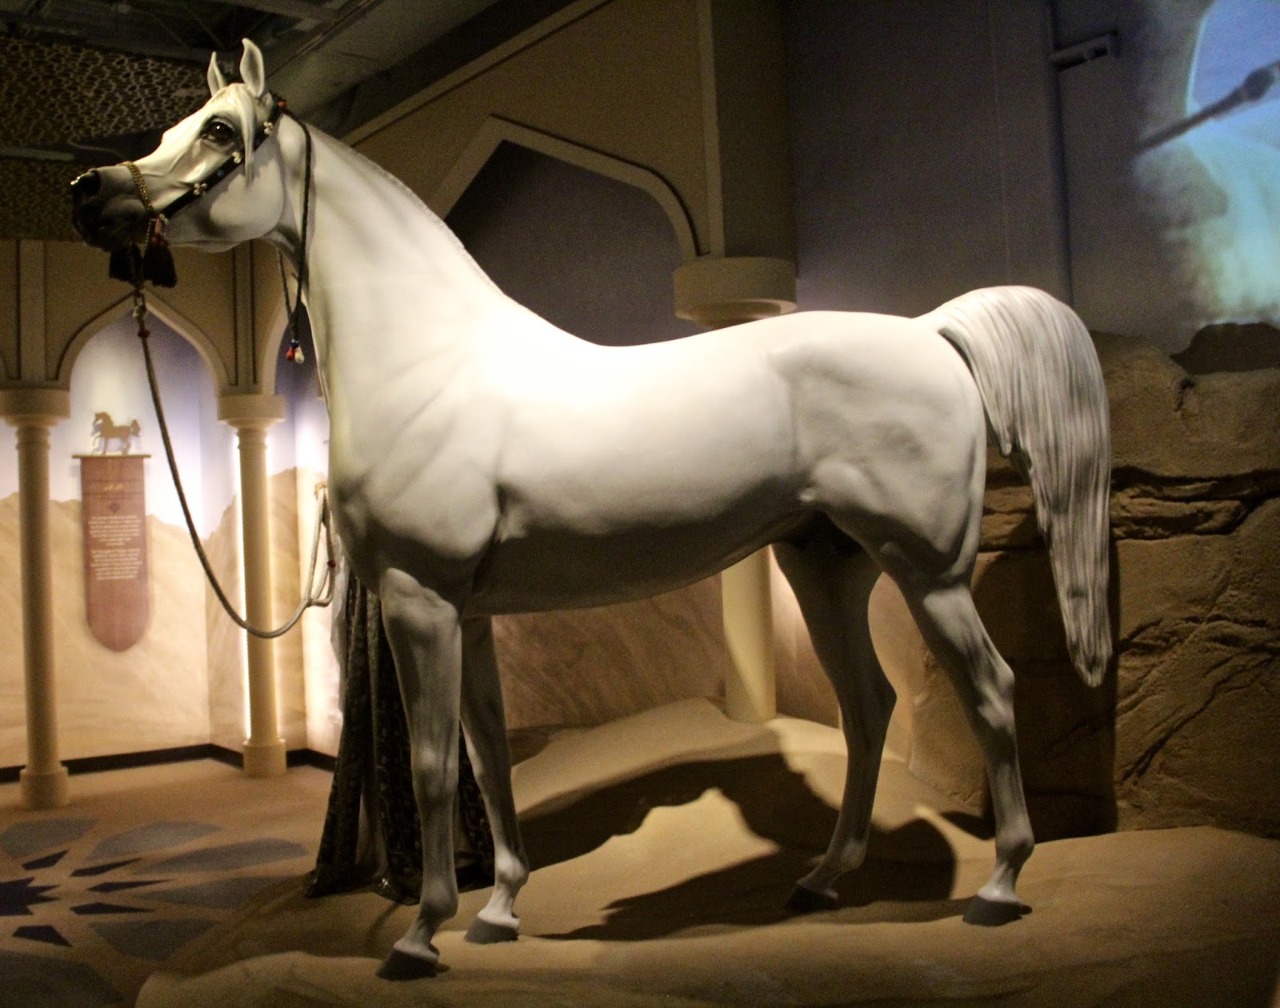 100 صورة تروي تاريخ العلاقة بين الإنسان والحصان في المتحف الدولي للخيول